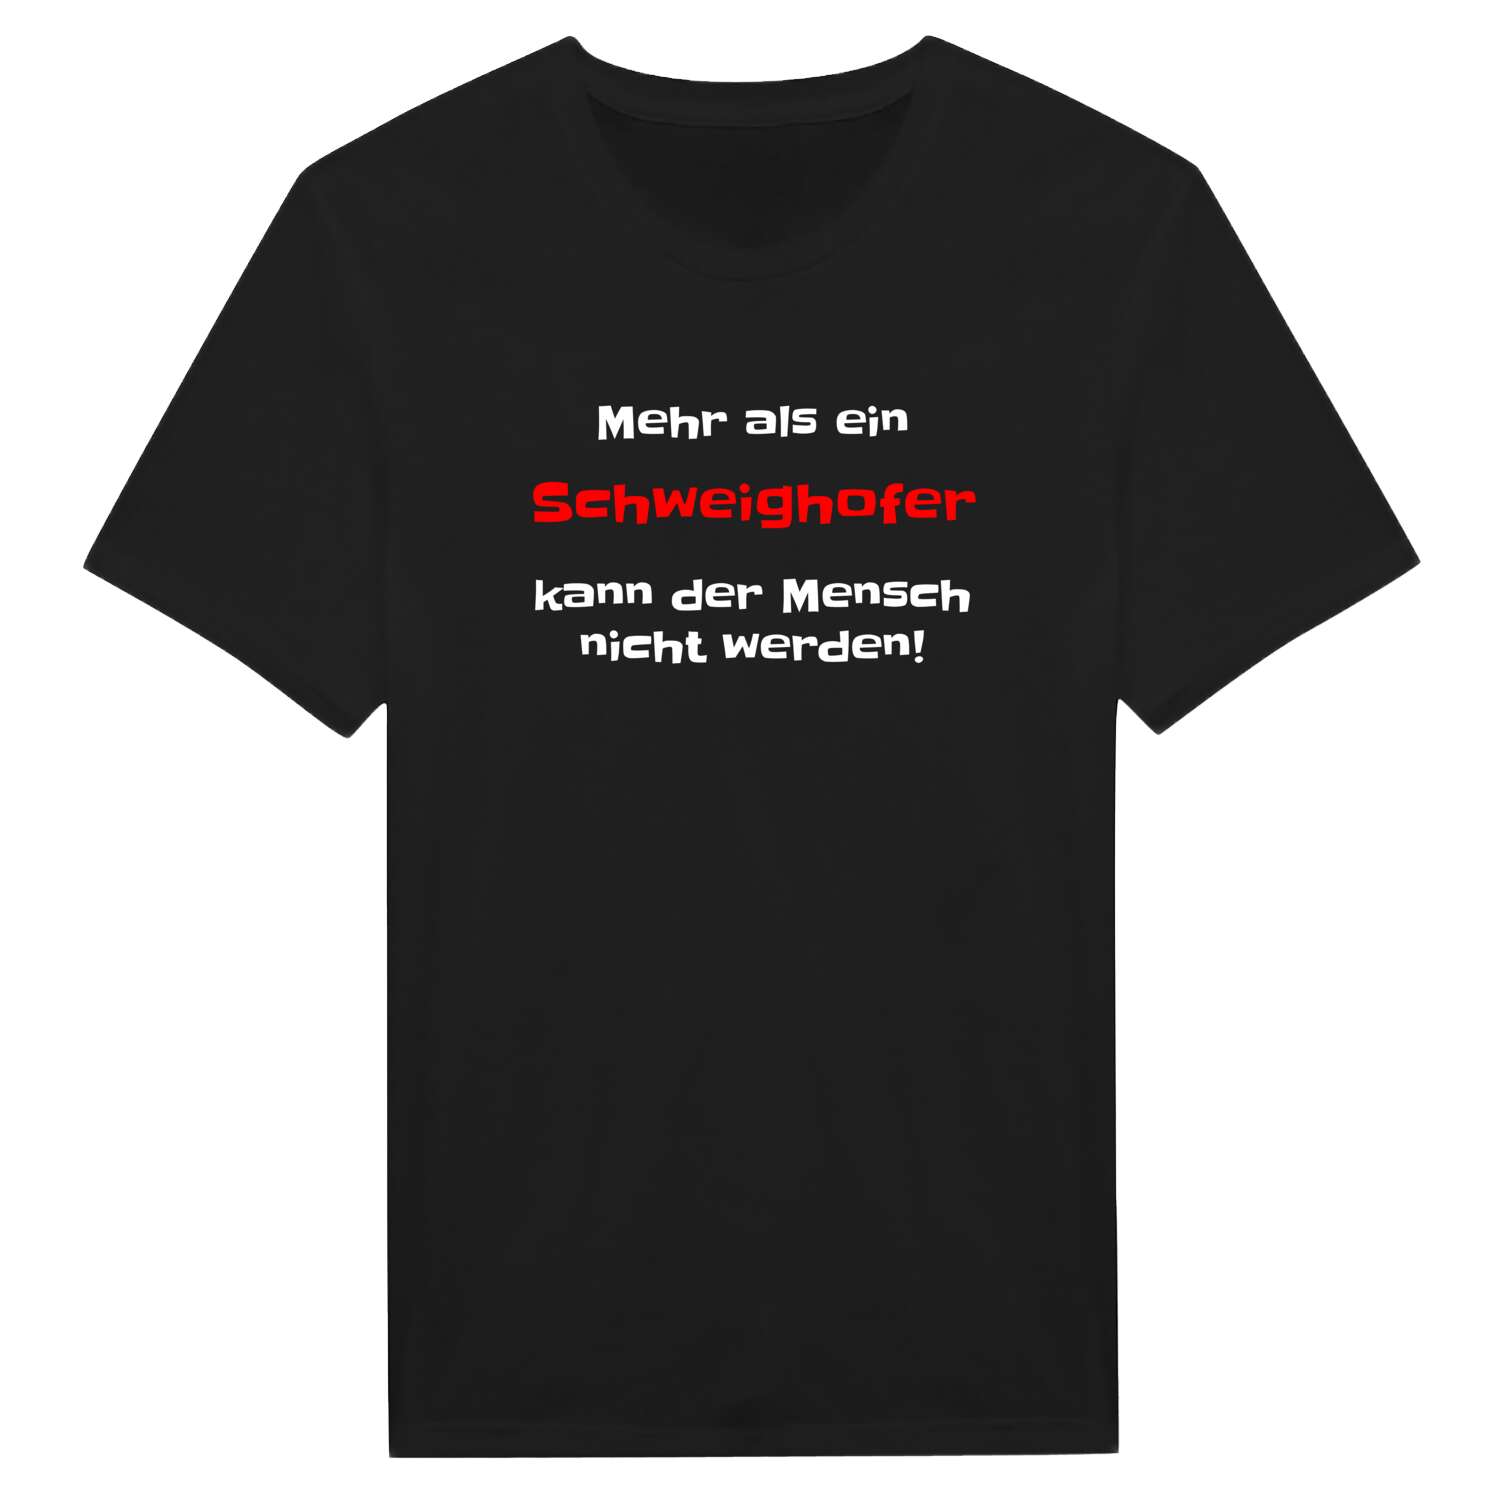 Schweighof T-Shirt »Mehr als ein«